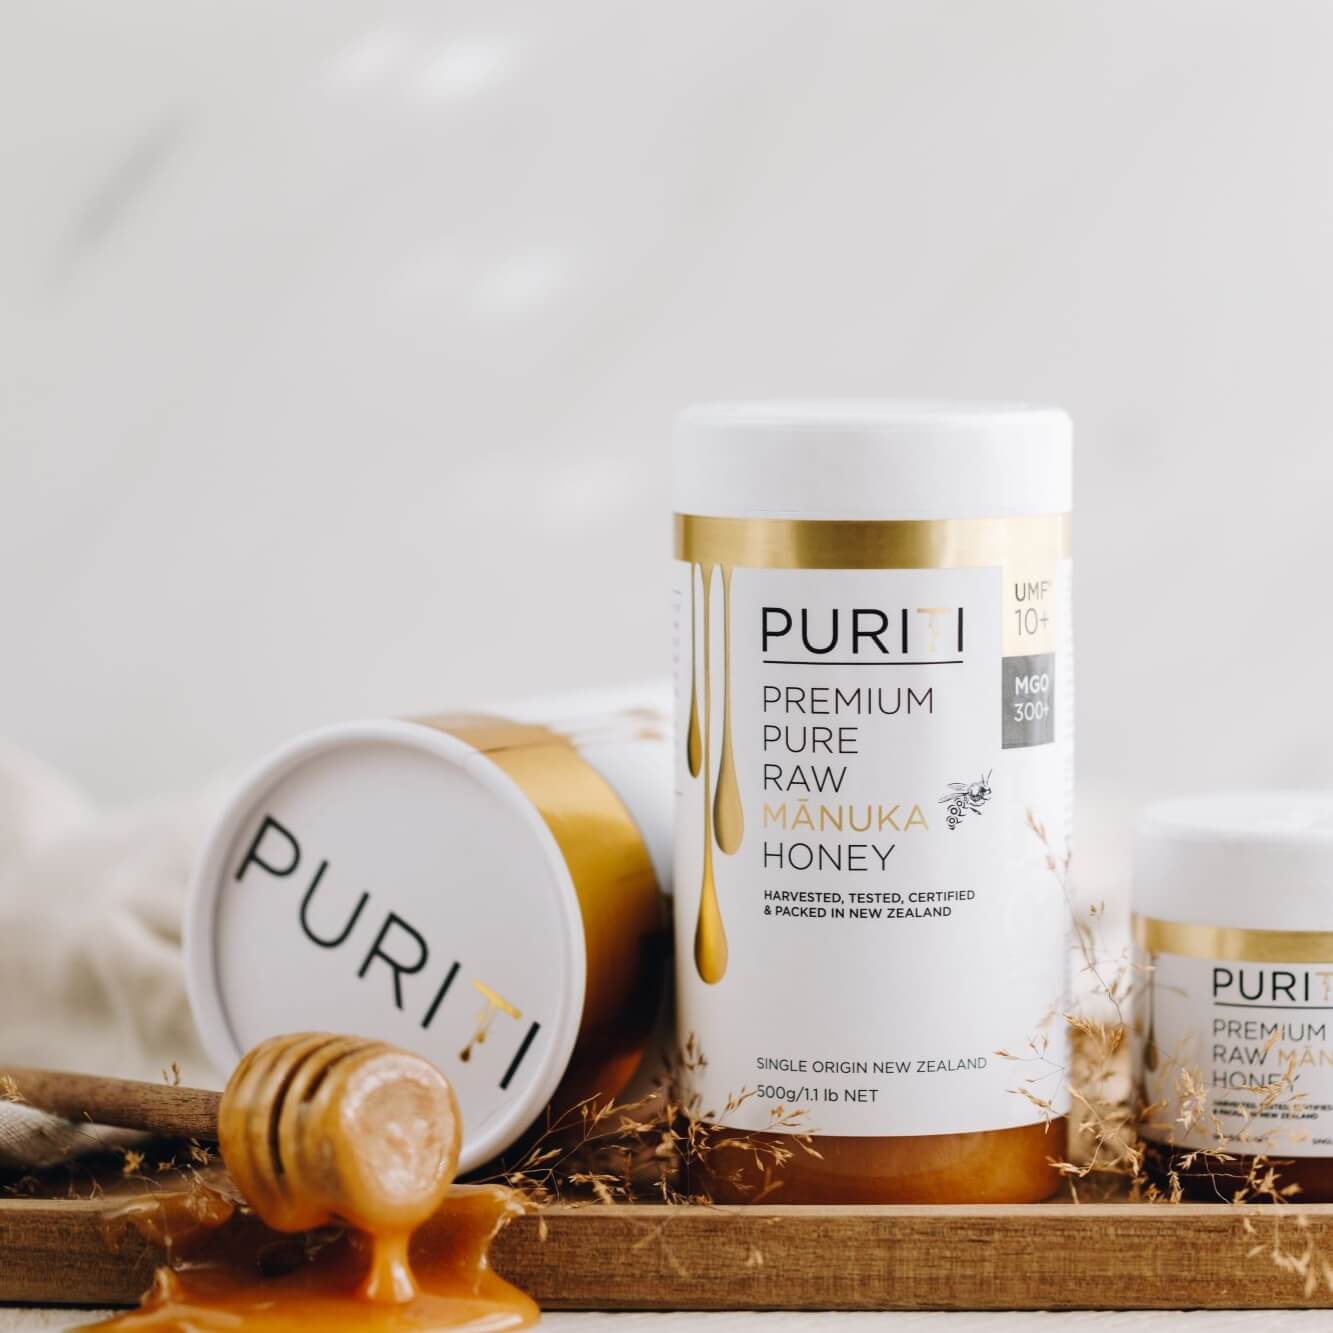 Puriti Premium Raw Manuka Honey UMF 10+ 500g 17.6 oz Jar